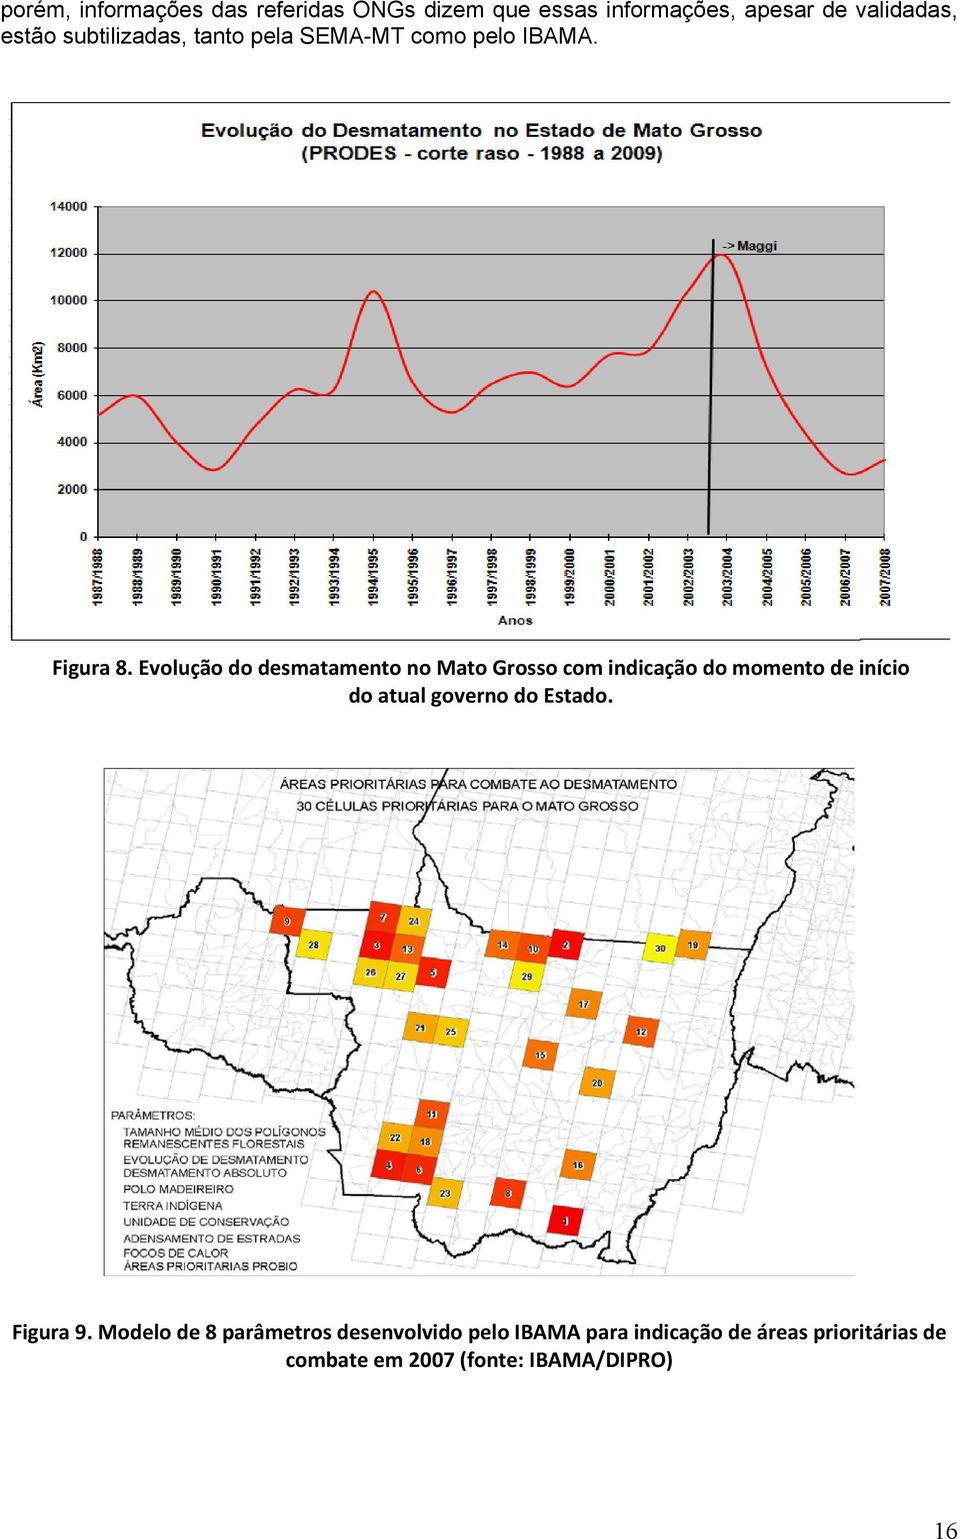 Evolução do desmatamento no Mato Grosso com indicação do momento de início do atual governo do